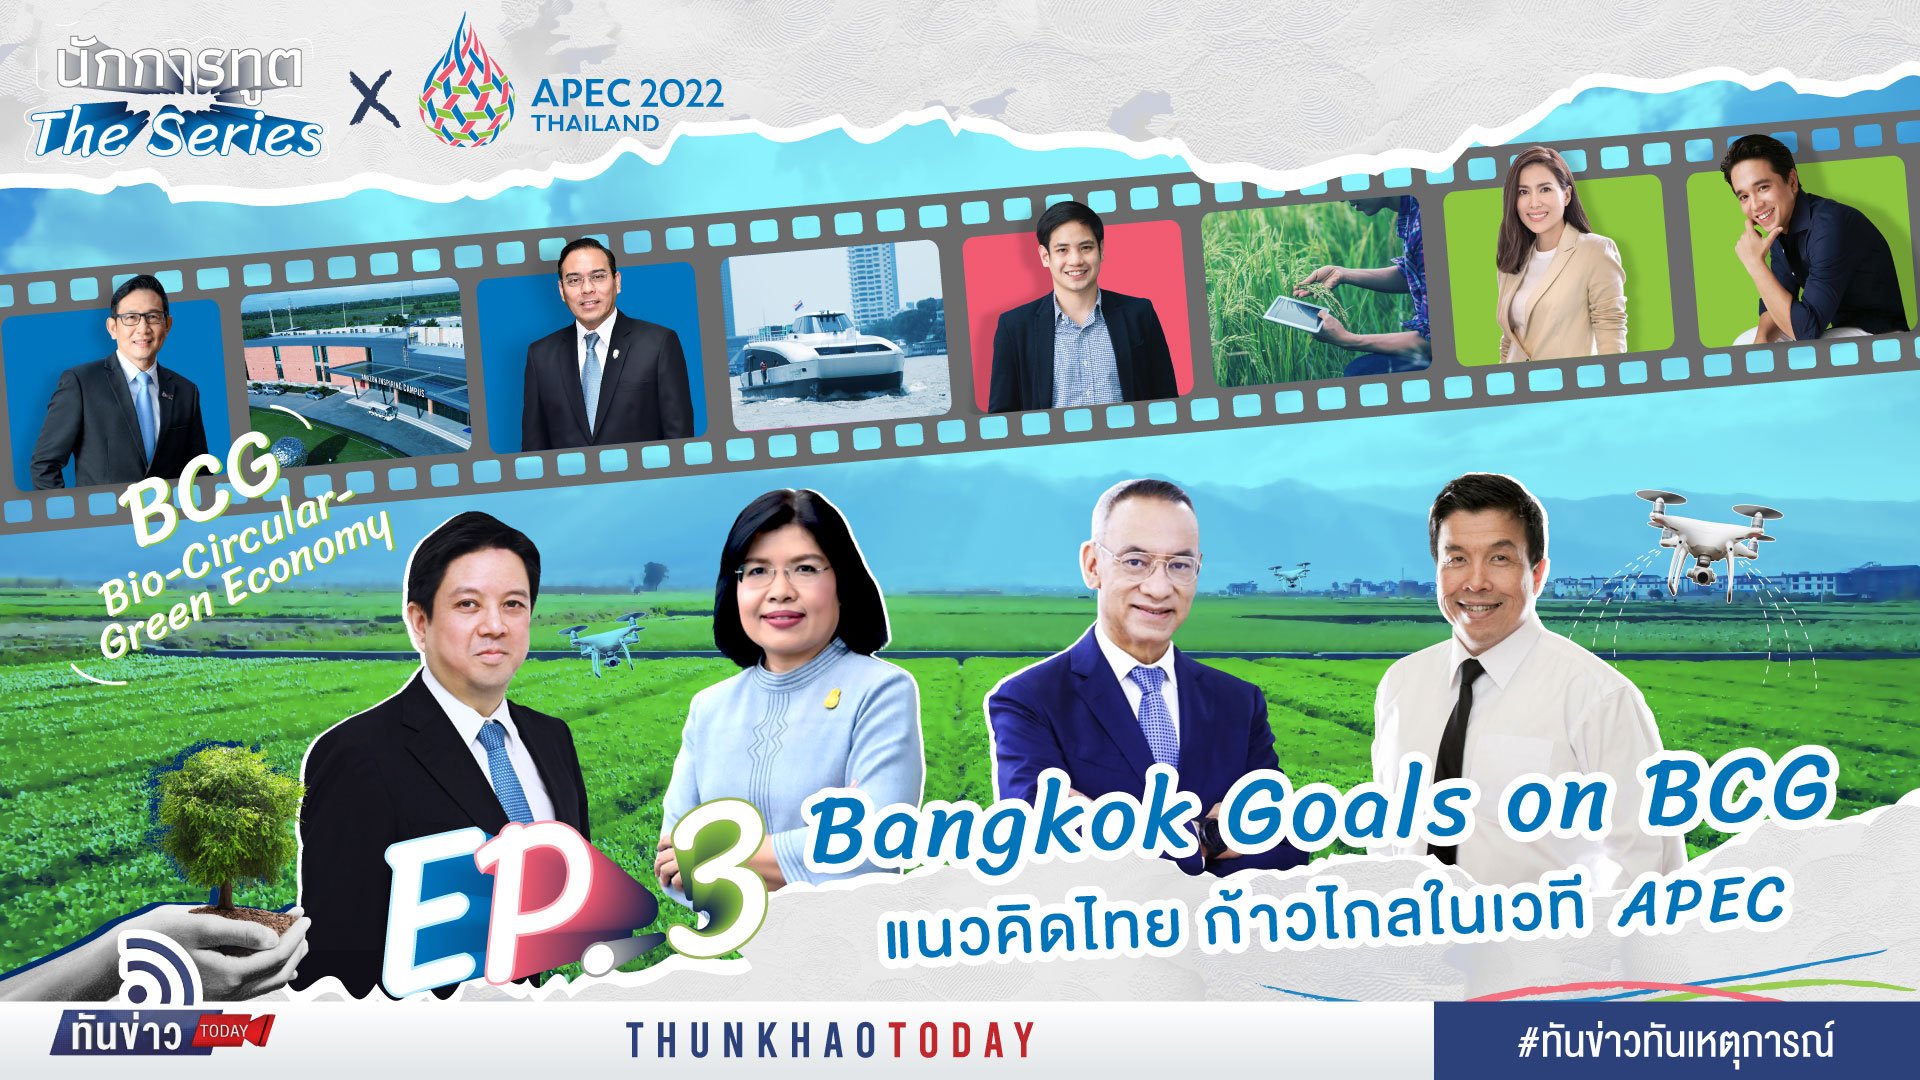 Bangkok Goals on BCG แนวคิดไทย ก้าวไกลในเวที APEC